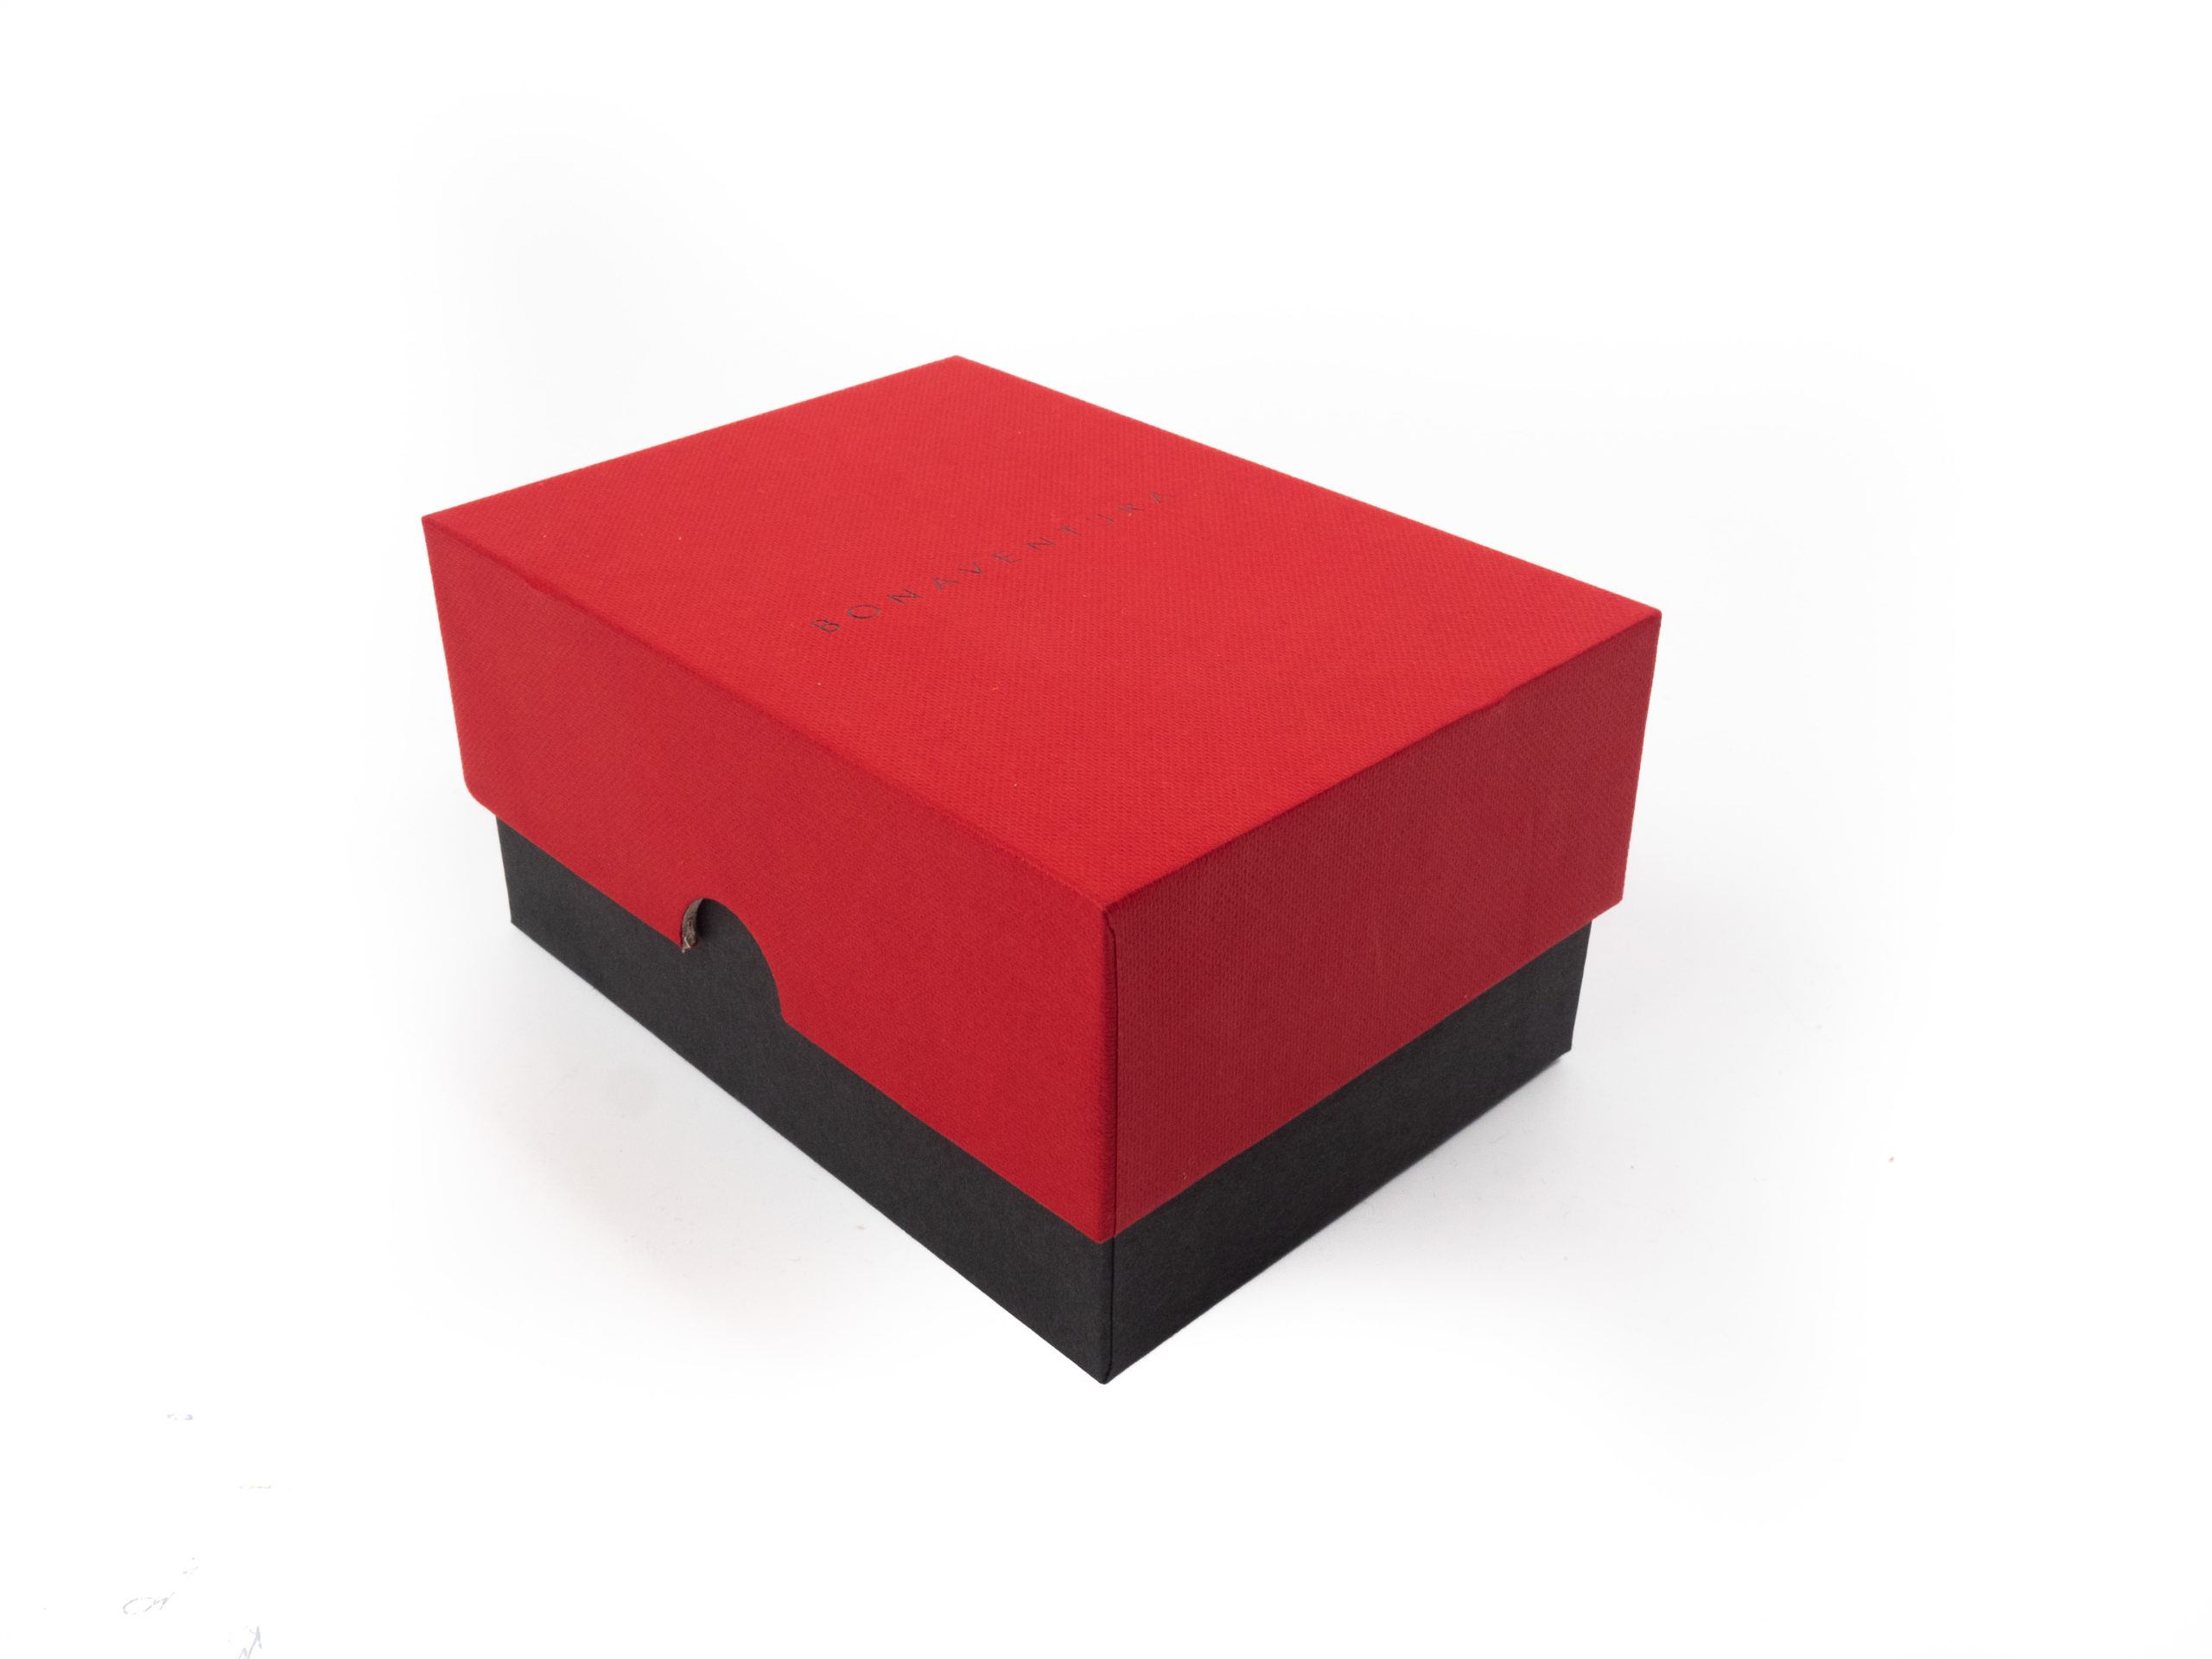 Dárková krabice v provedení víko/dno byla vyrobena na zakázku ve dvou barevném provedení. Víčko je v červené barvě se strukturou a dno v černém potahu bez struktury. Na víčku černá ražba loga.